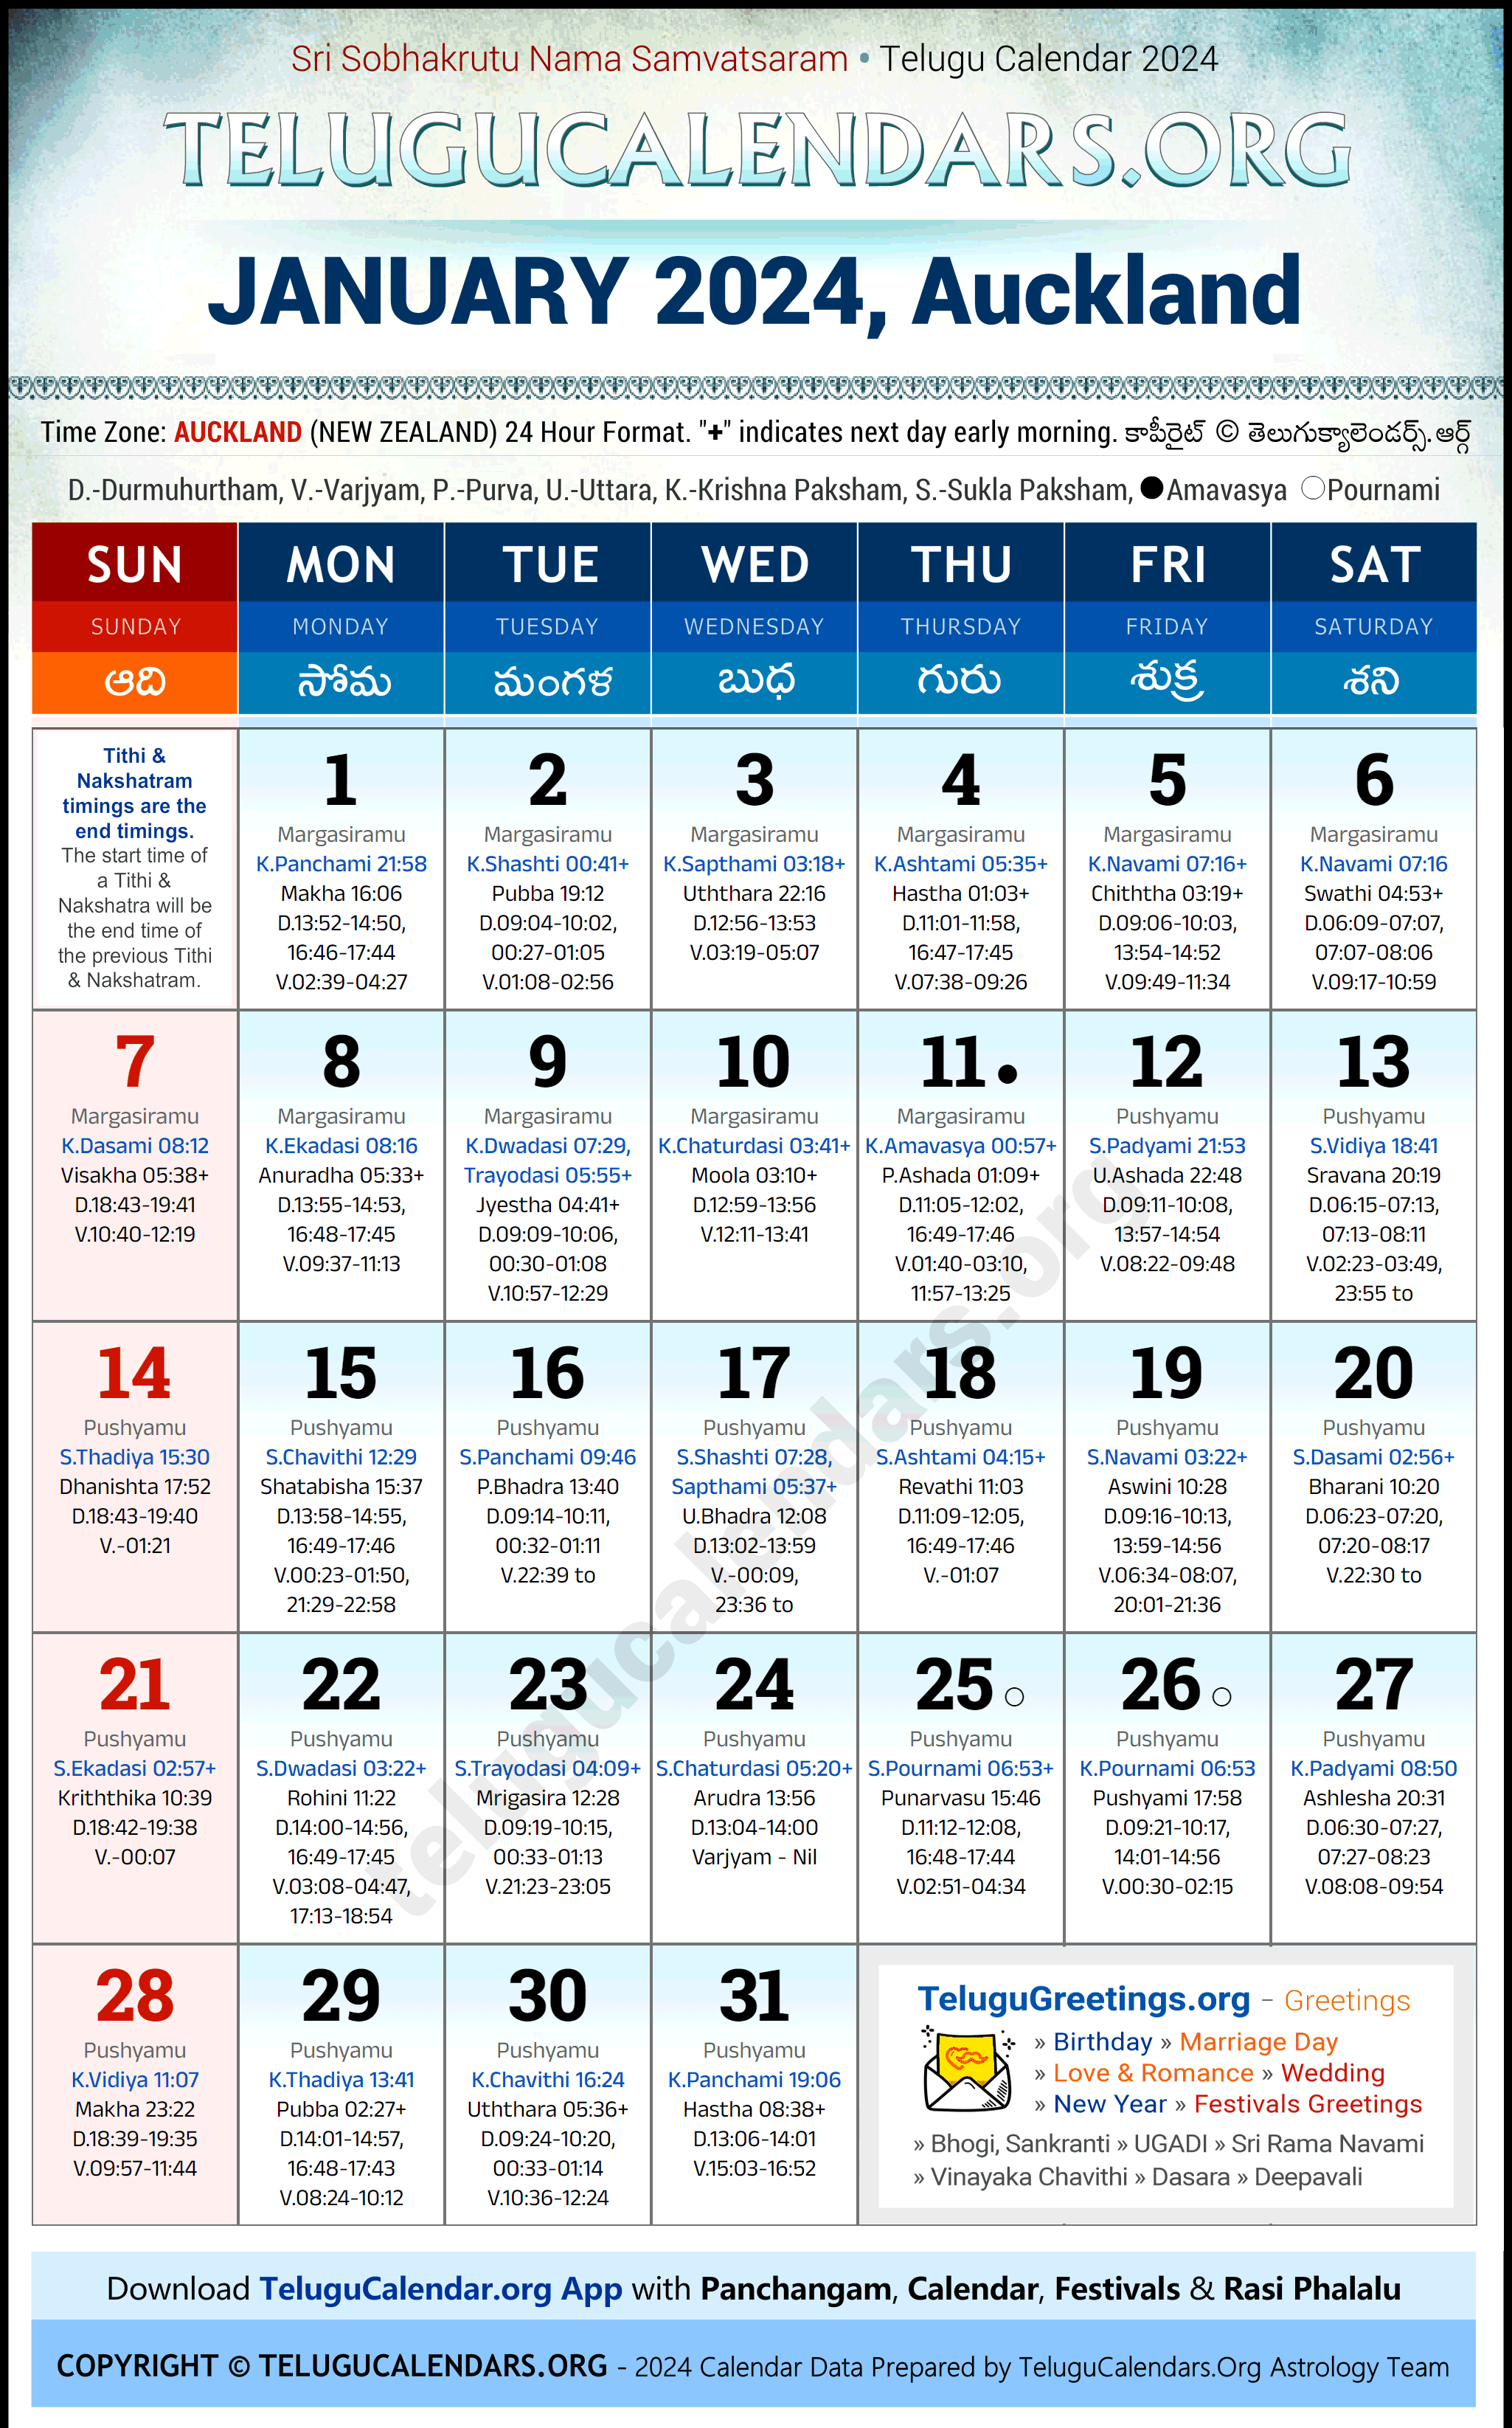 Telugu Calendar 2024 January Festivals for Auckland